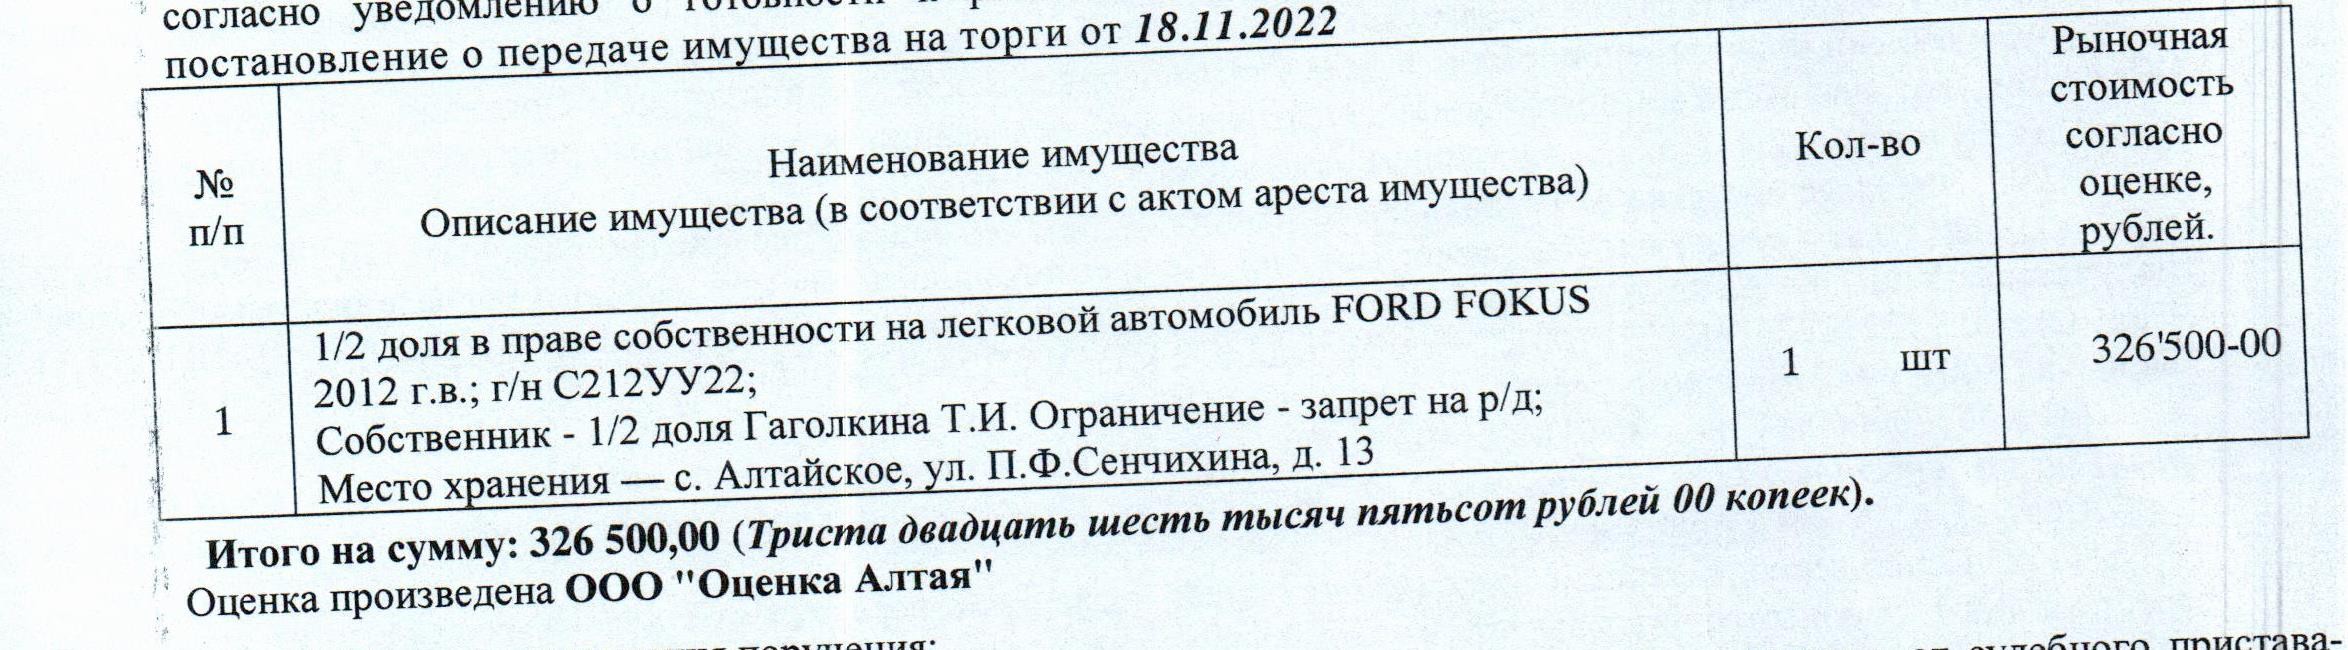 Лот№11 1/2 доля в праве собственности на автомобиль FORD FOKUS, 2012 г.в., г/н С212УУ22, цвет: темно